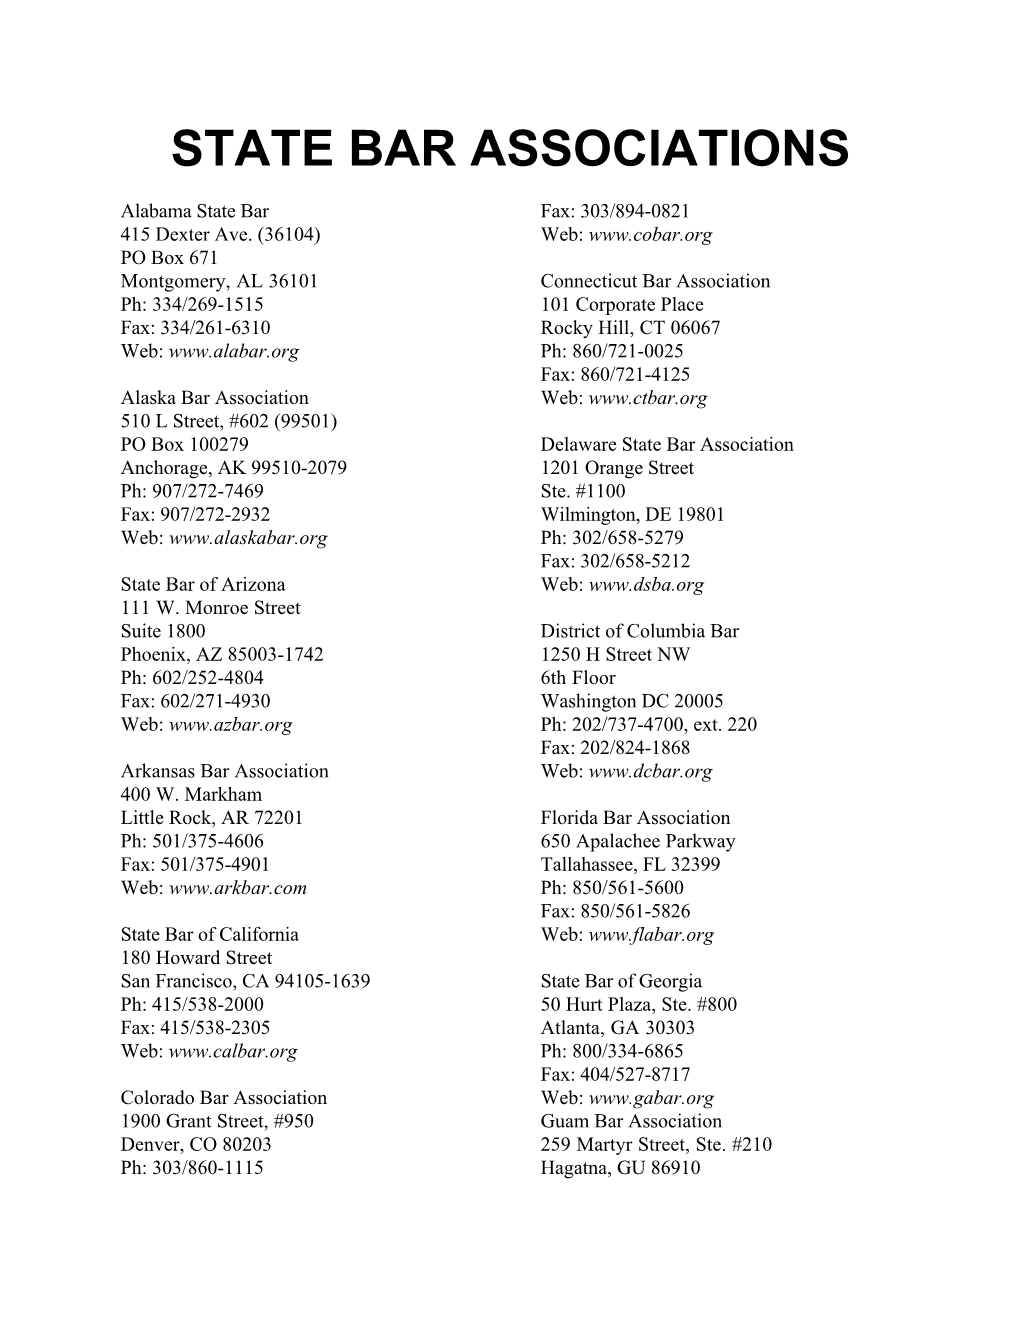 State Bar Associations